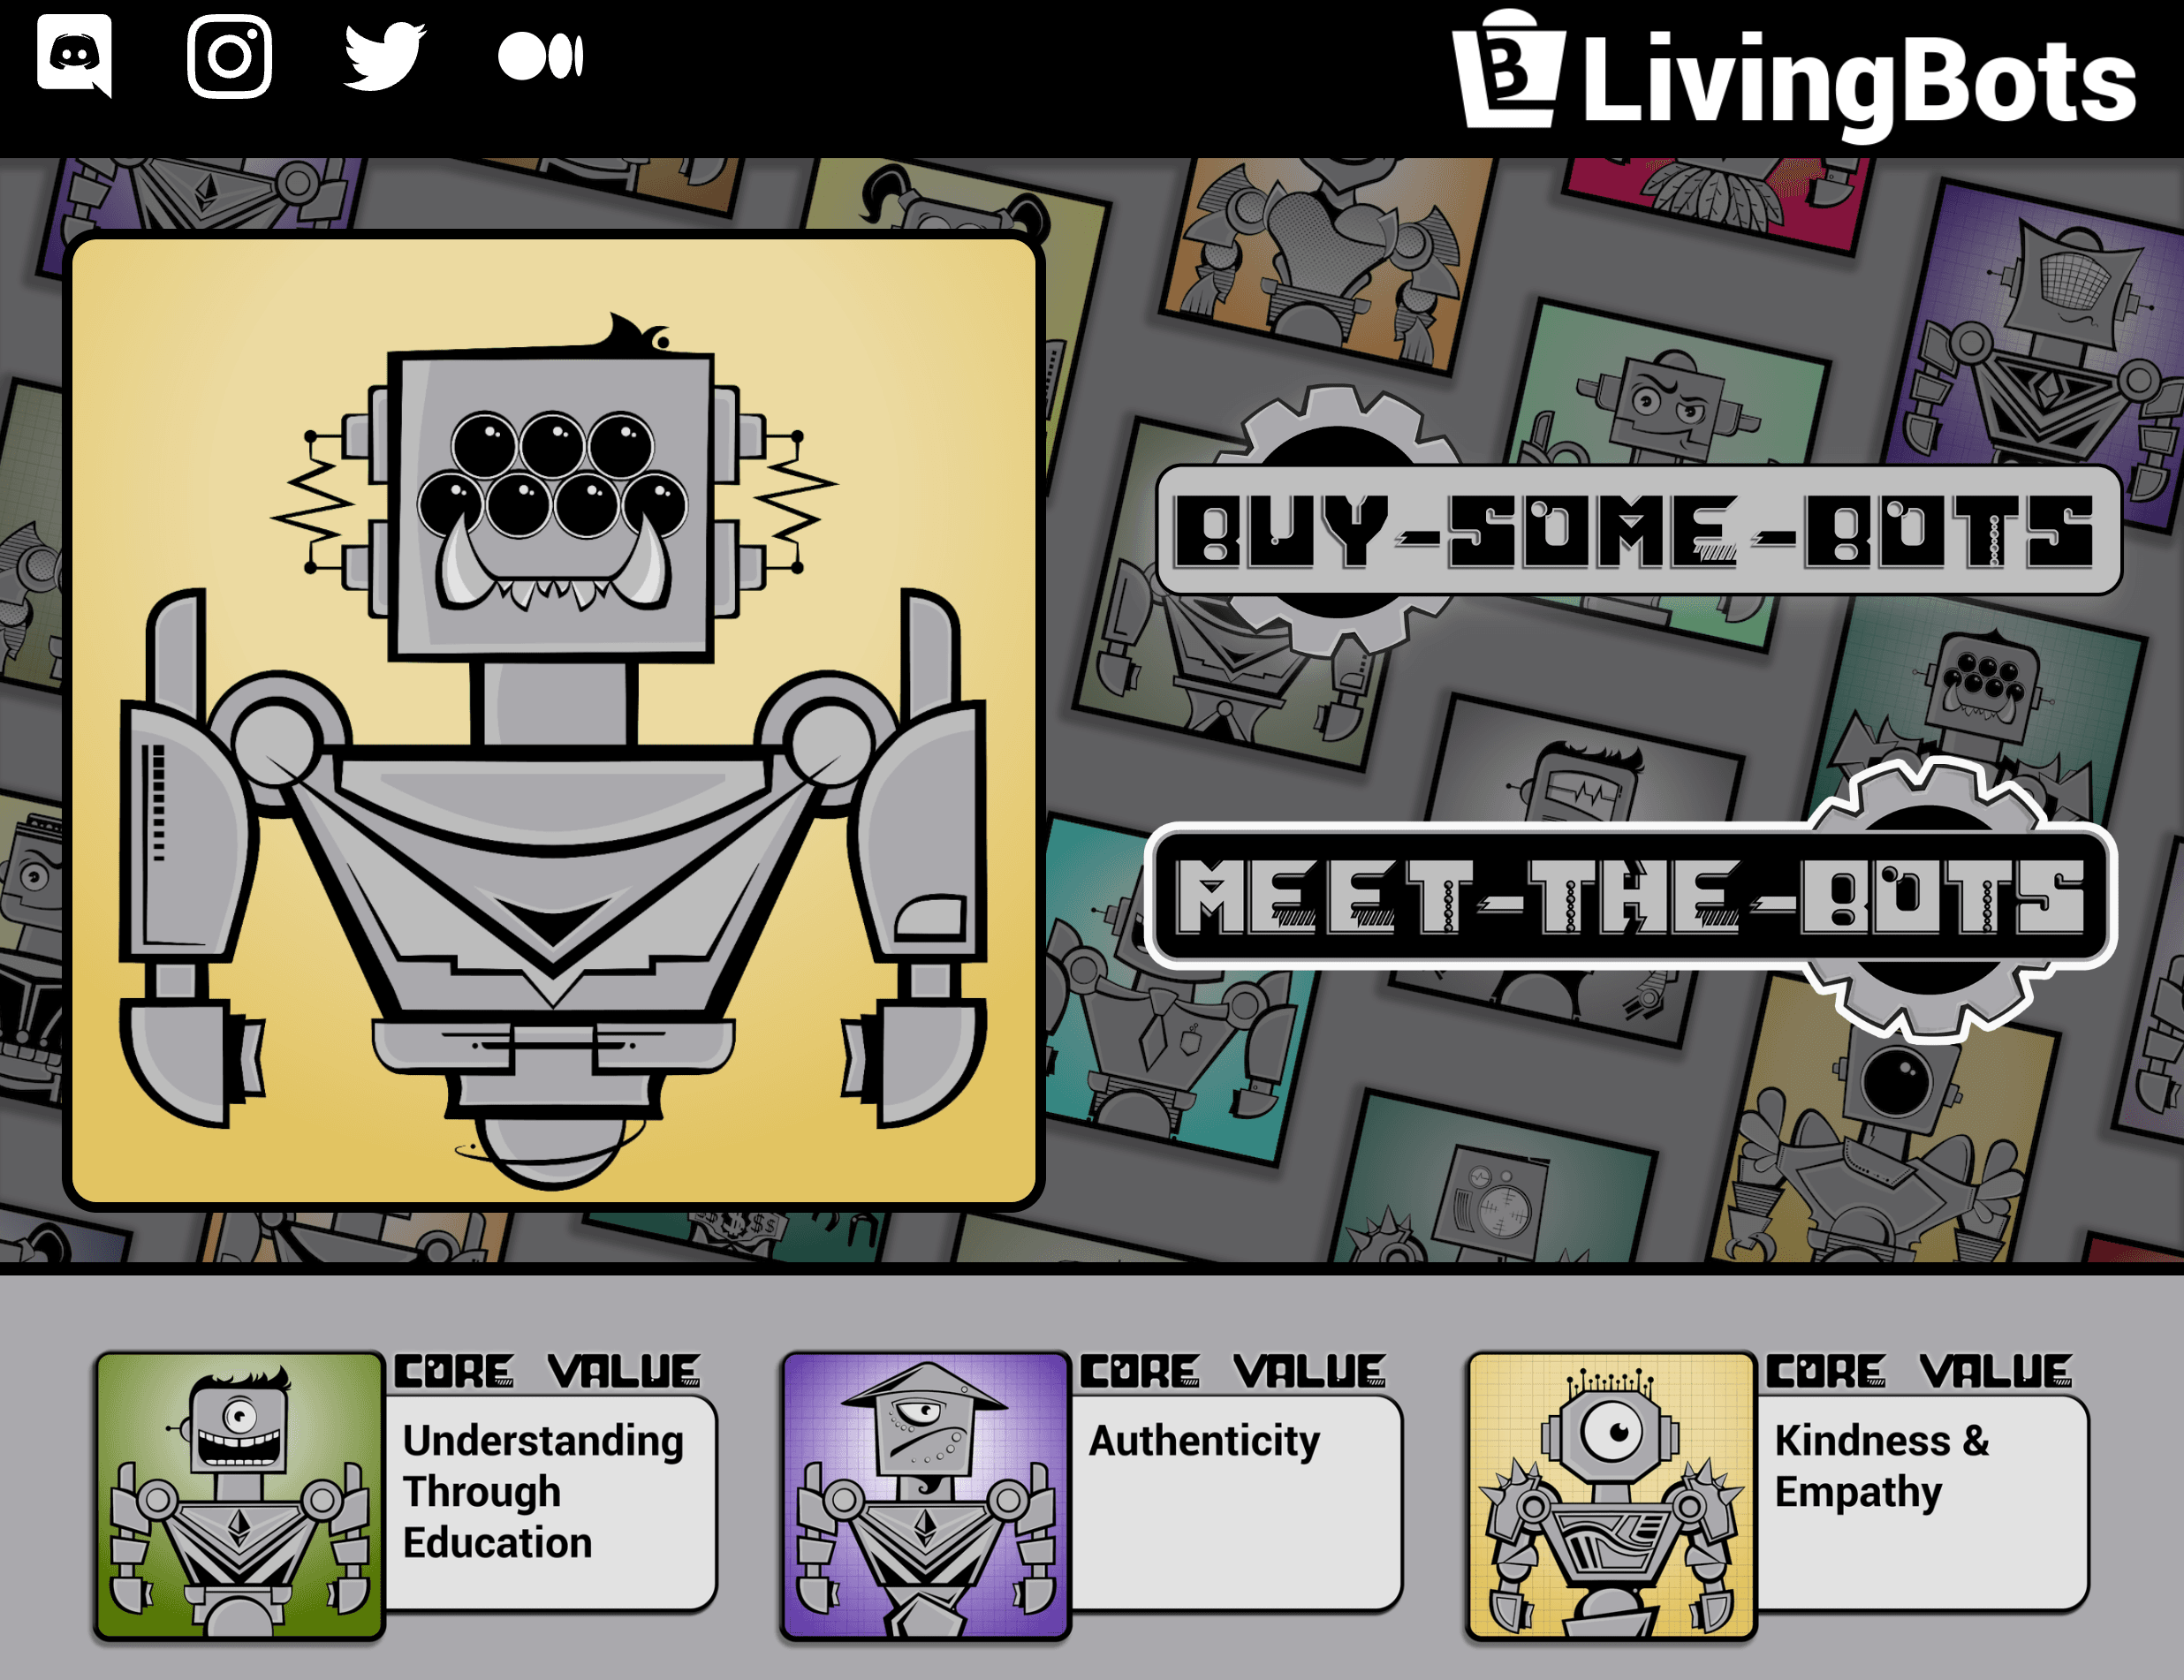 LivingBots